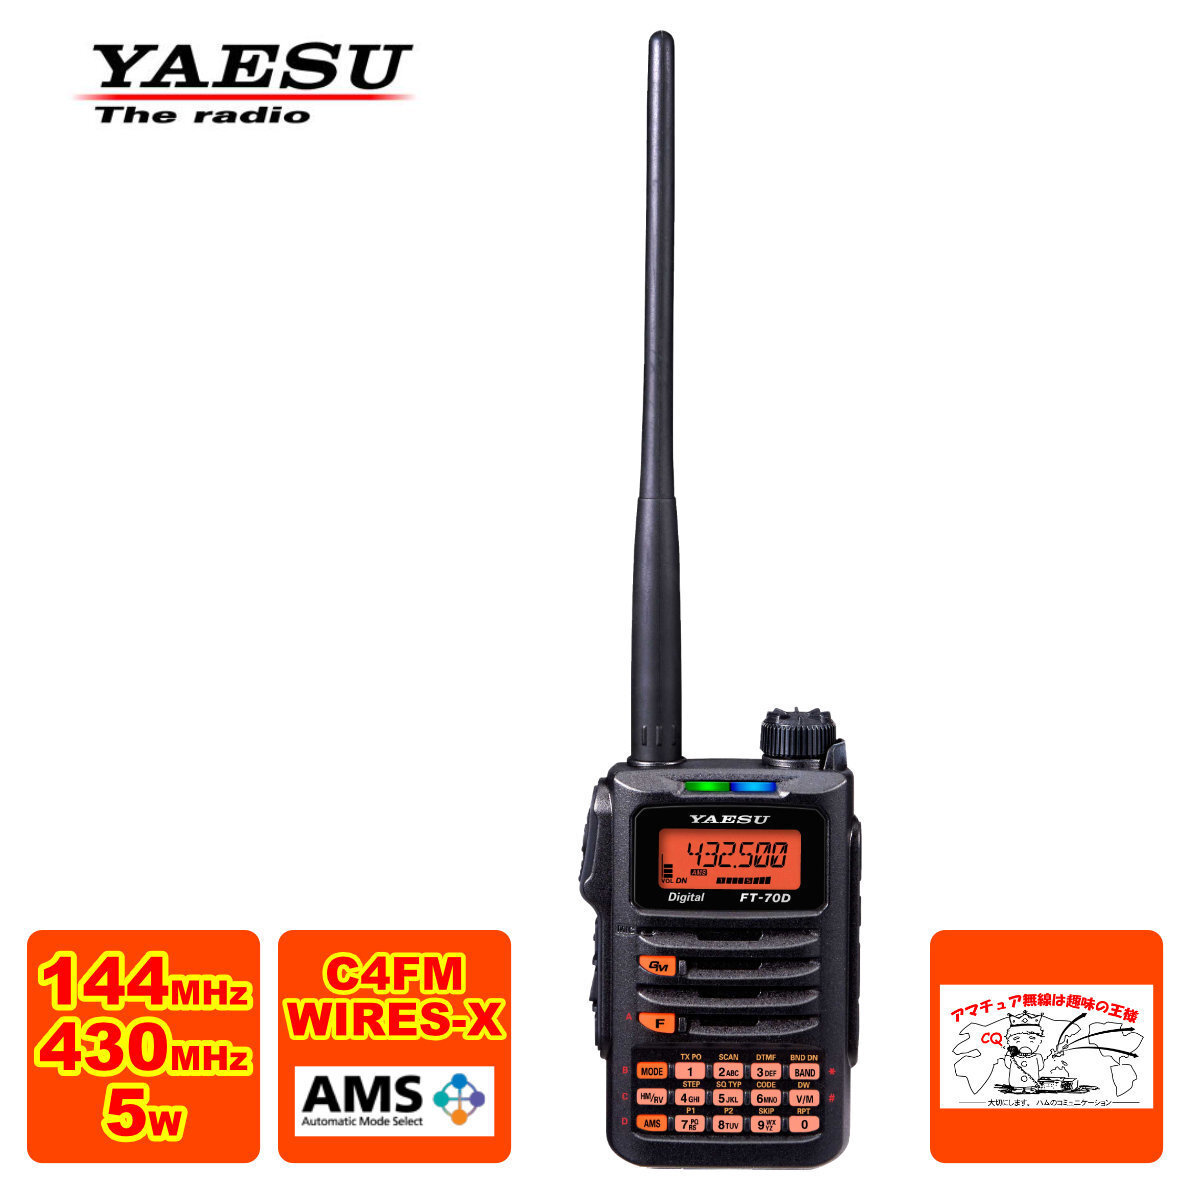  радиолюбительская связь FT-70D новый упаковка Yaesu беспроводной C4FM/FM 144/430MHz двойной частота цифровой приемопередатчик SAD-25 версия 